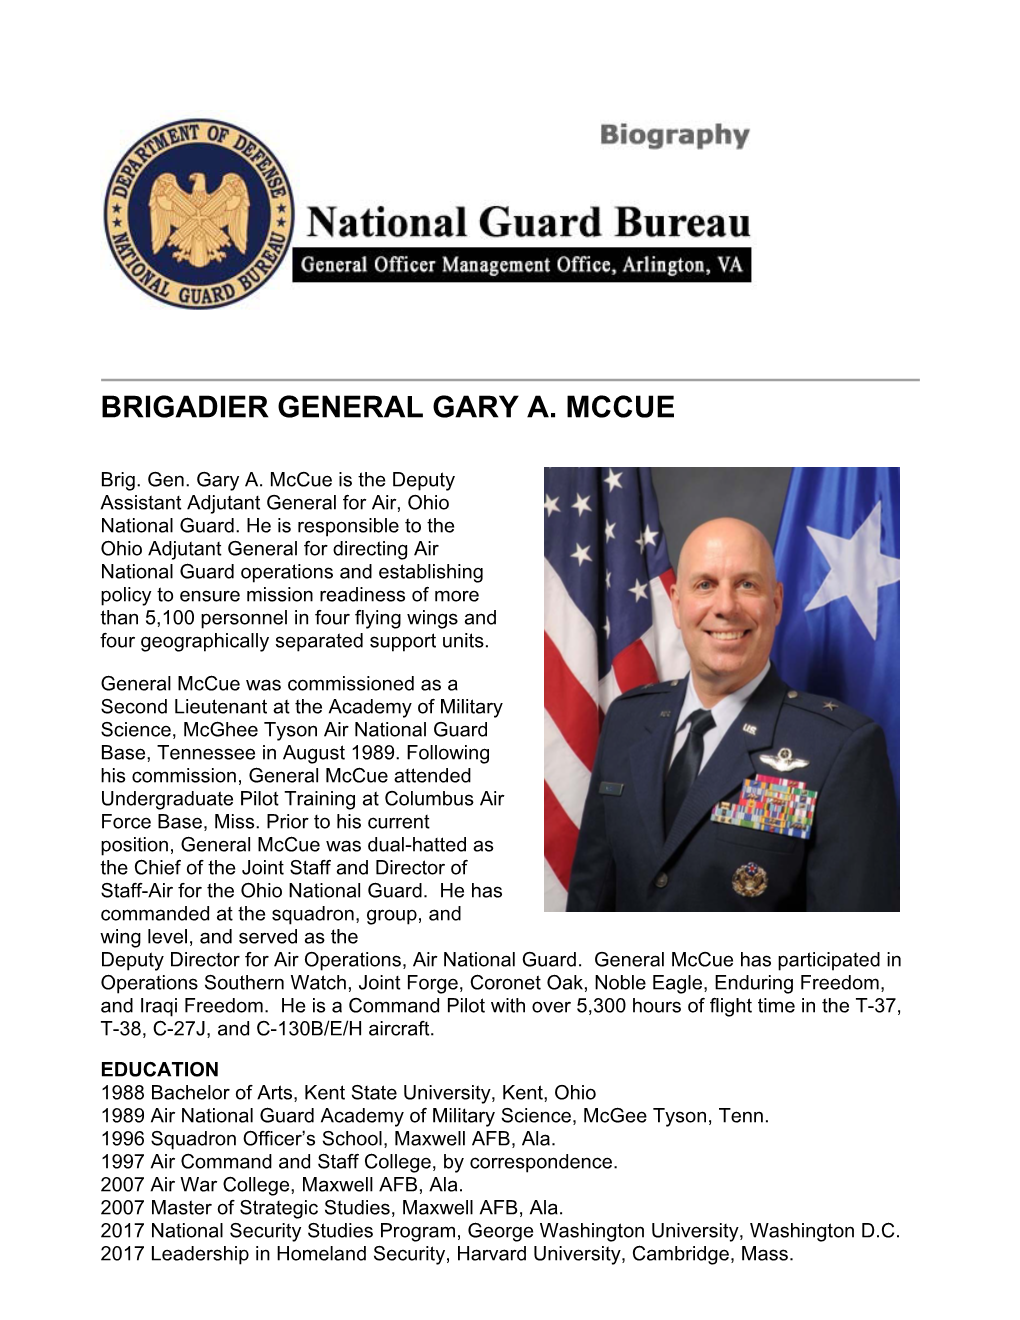 Bio, Brig Gen Mccue, Deputy ATAG-Air